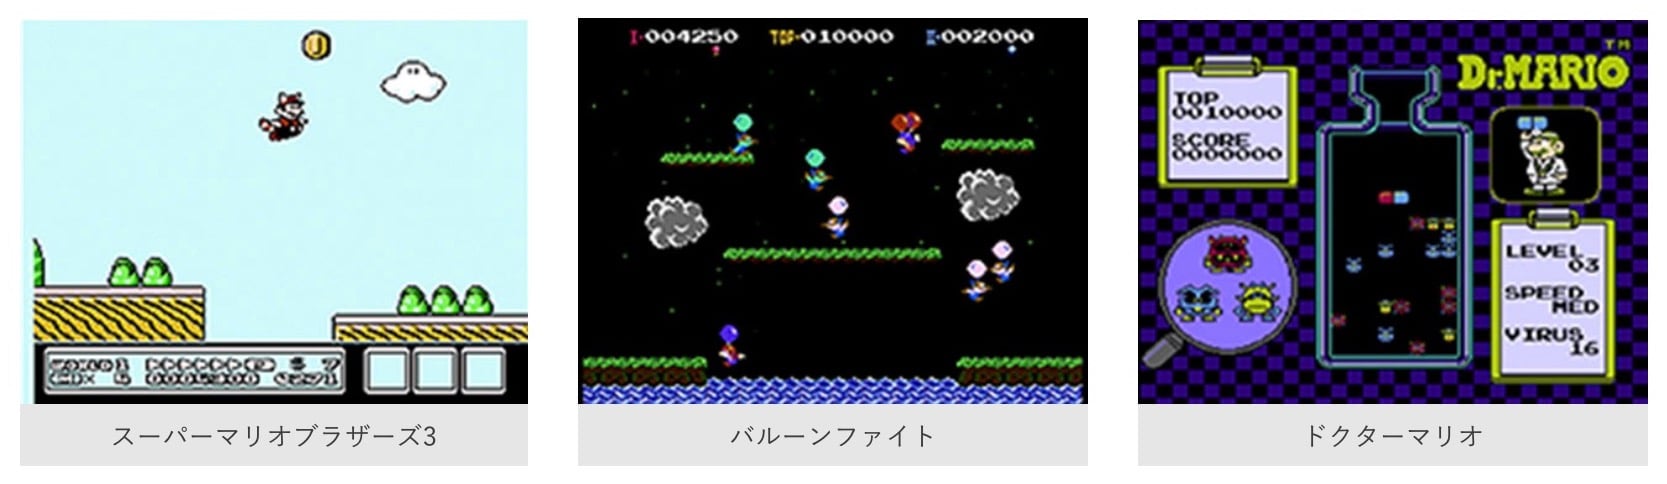 任天堂、オンラインサービス「Nintendo Switch Online」を9月に正式スタート